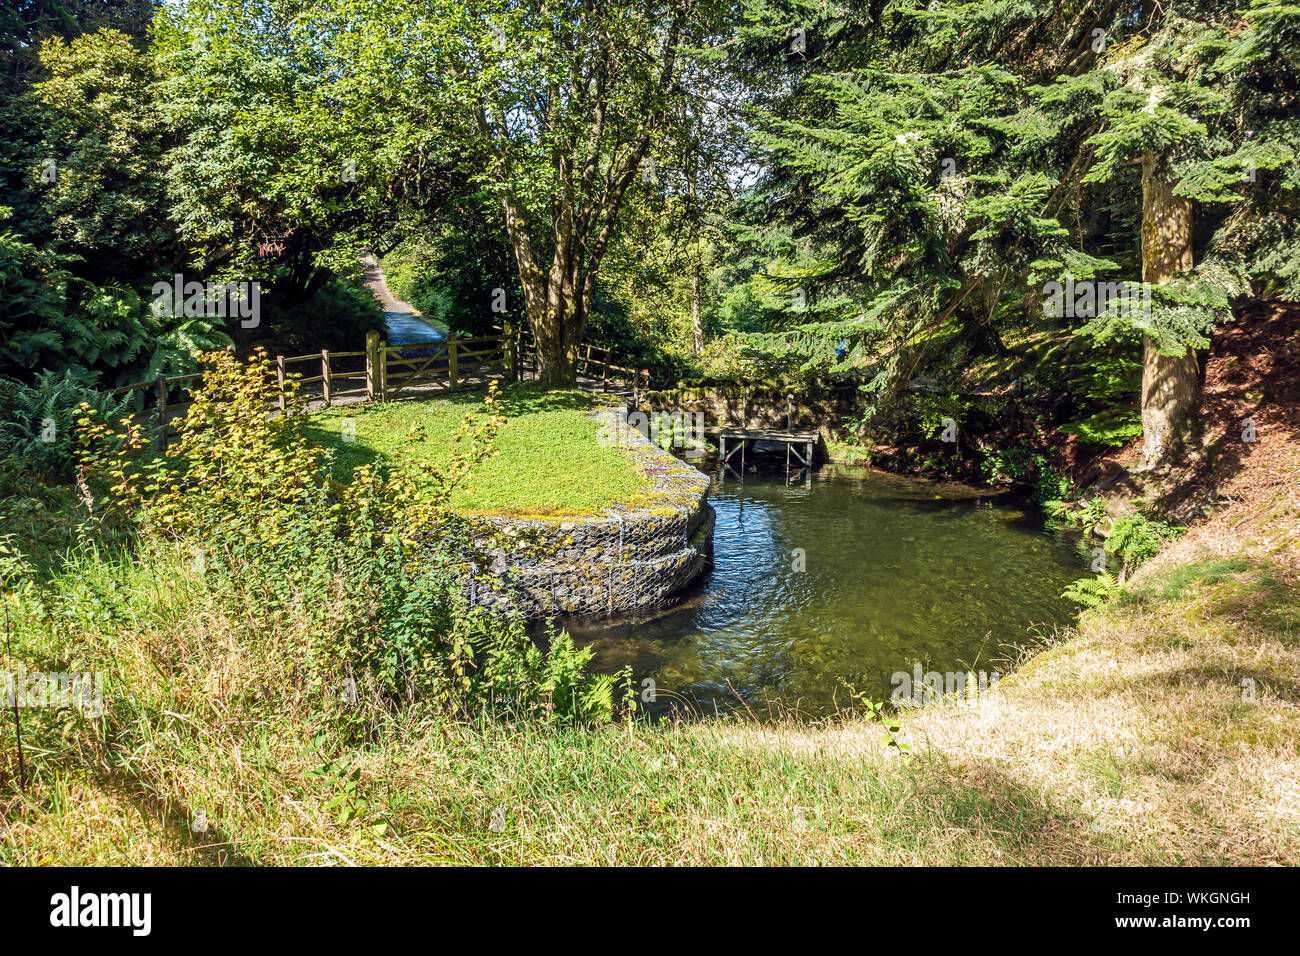 La dynamo de l étang à Dawyck Botanic Garden Stobo près de Peebles Ecosse Scottish Borders UK Banque D'Images